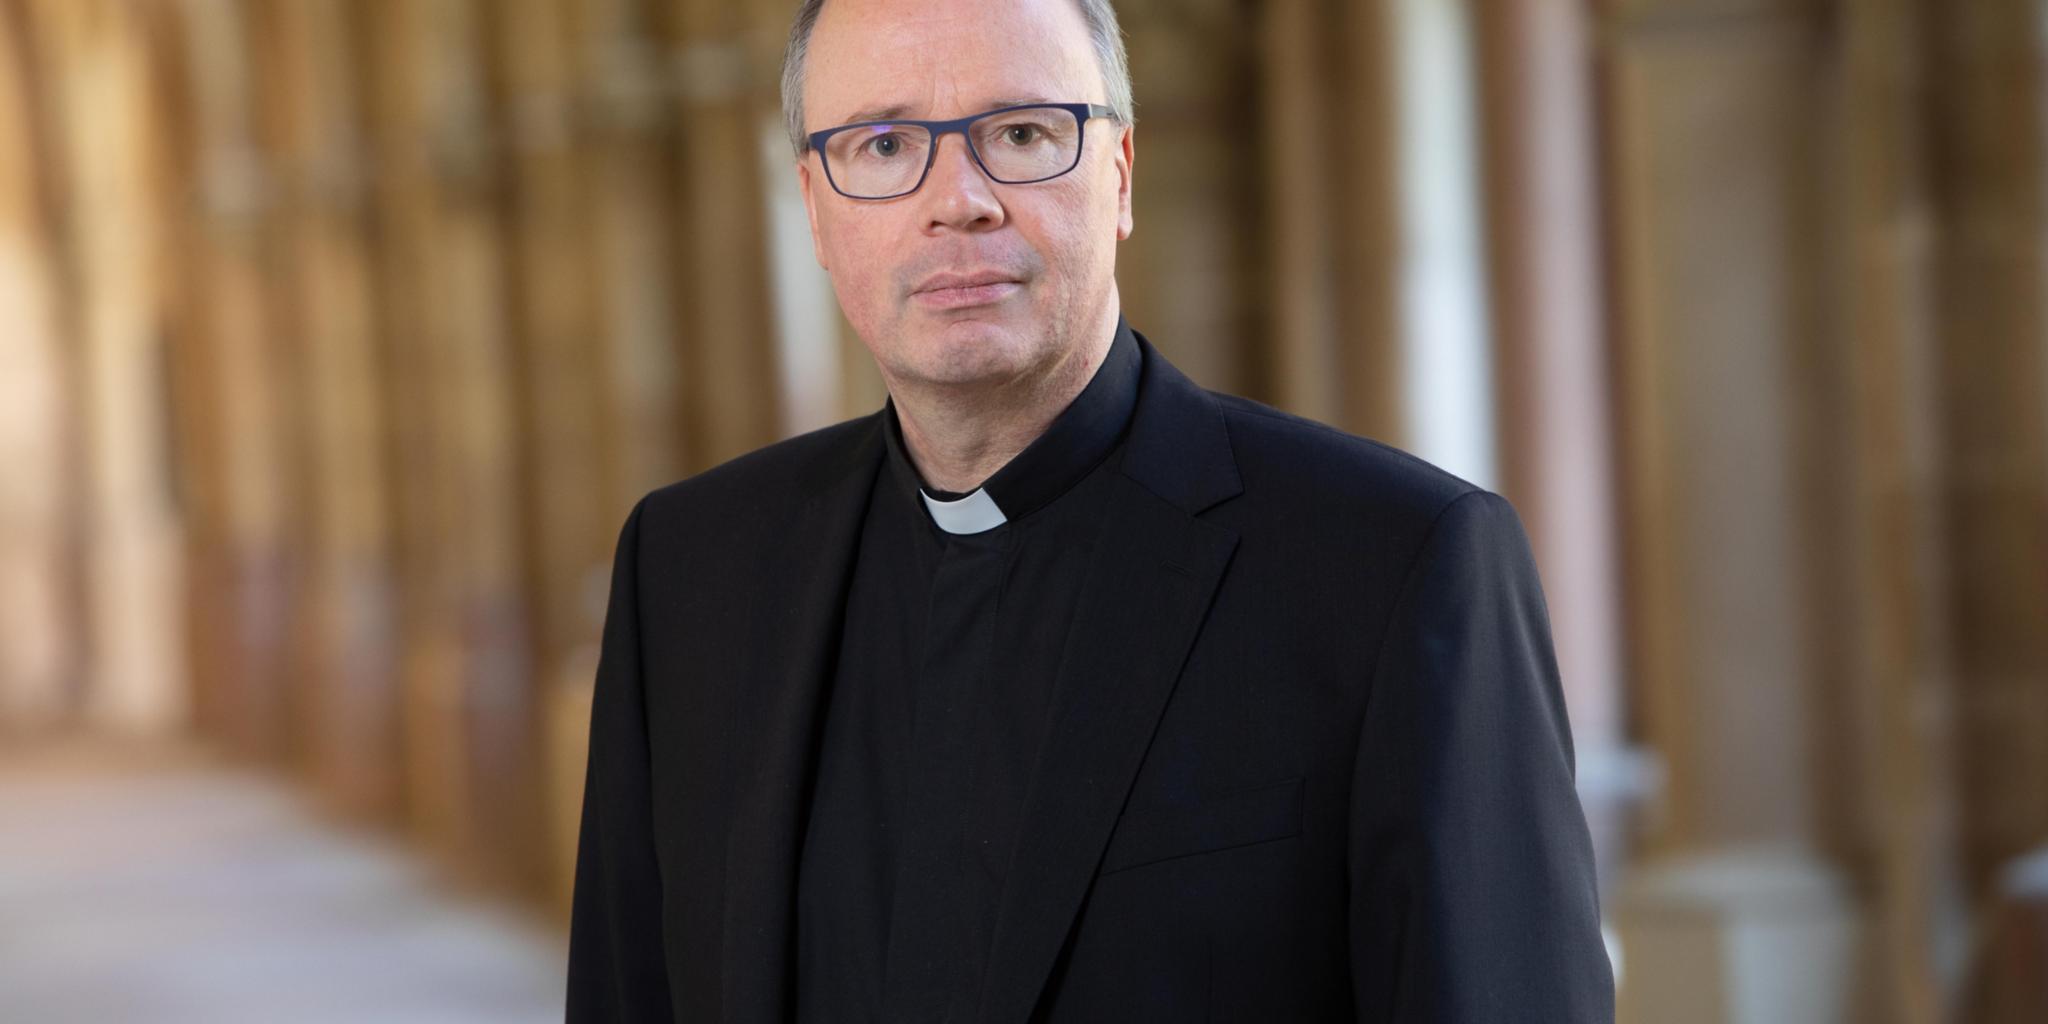 Bischof Dr. Stephan Ackermann wird das Amt als Missbrauchsbeauftragter der Deutschen Bischofskonferenz im September abgeben